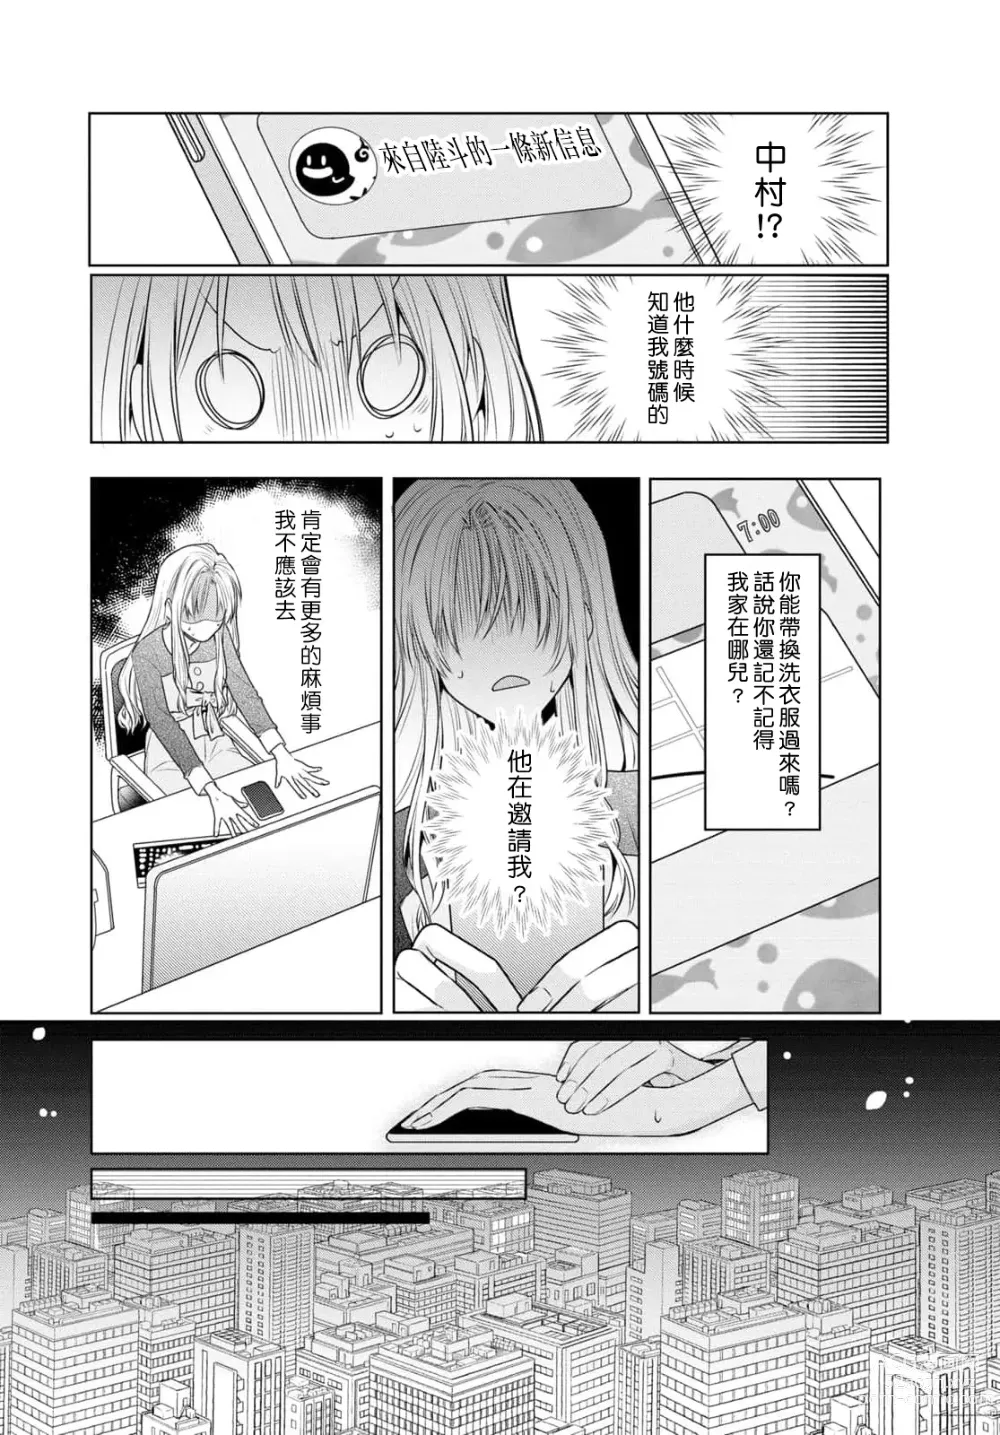 Page 22 of manga 过剩爱情让我今晚也体内高潮！？试婚夫妻的甜蜜情事 1-3